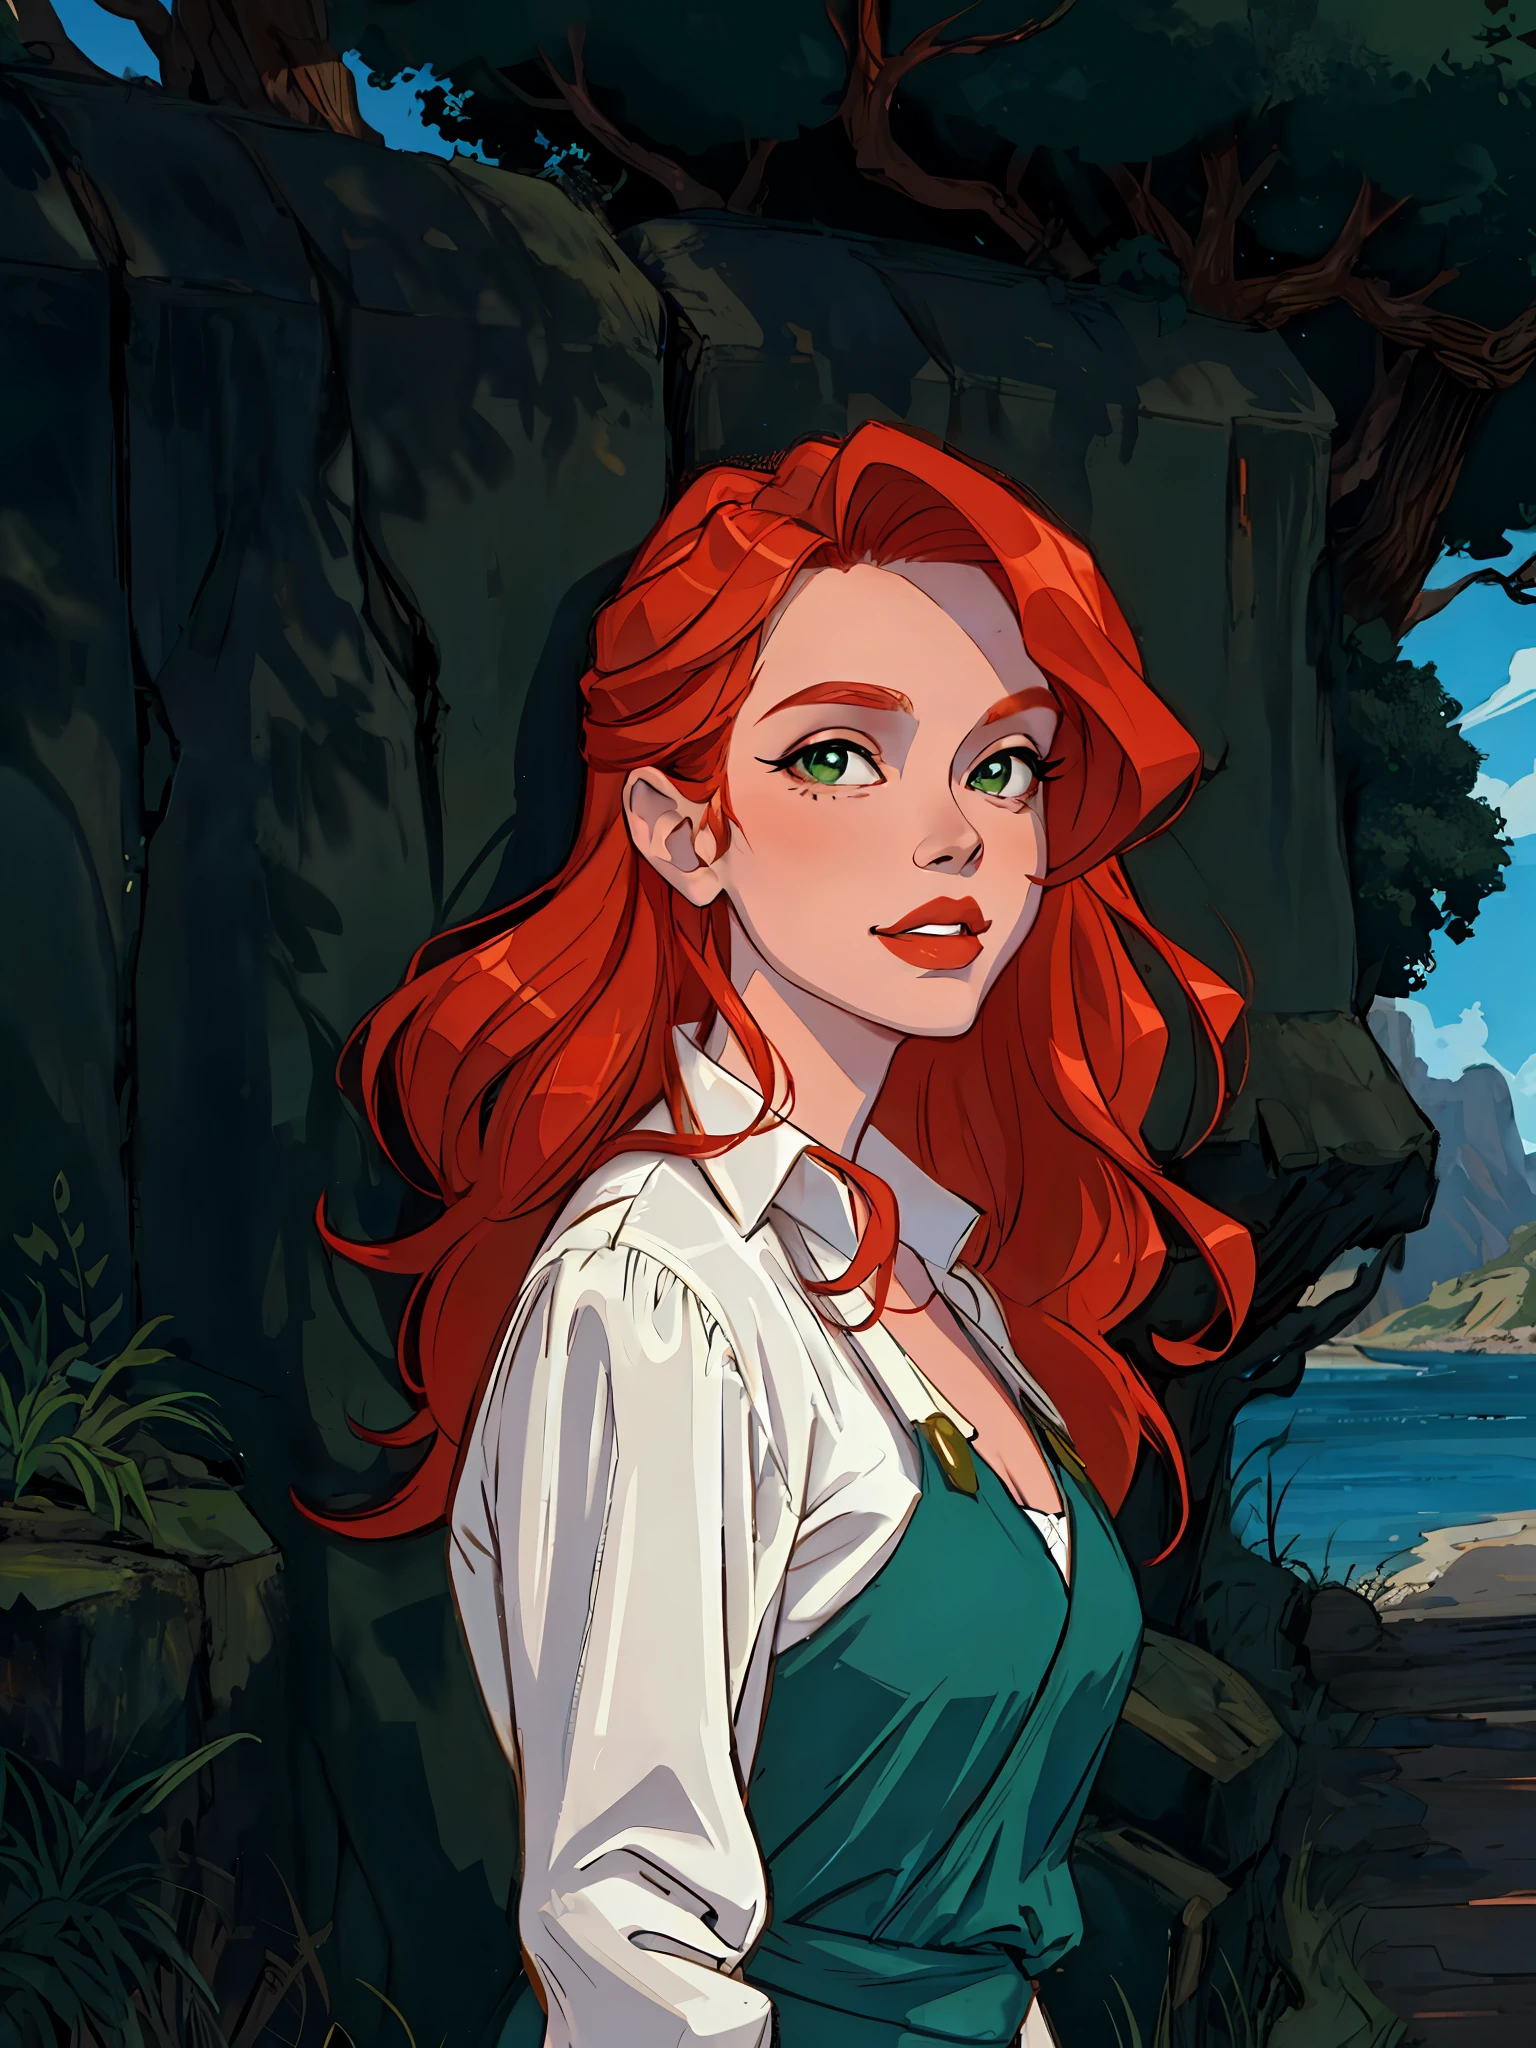 HD, (Лучшая детализация) (Лучшее качество), рыжеволосая женщина с длинными рыжими волосами и зеленым платьем позирует для фото, зрелый и великолепный, естественный свет и тень